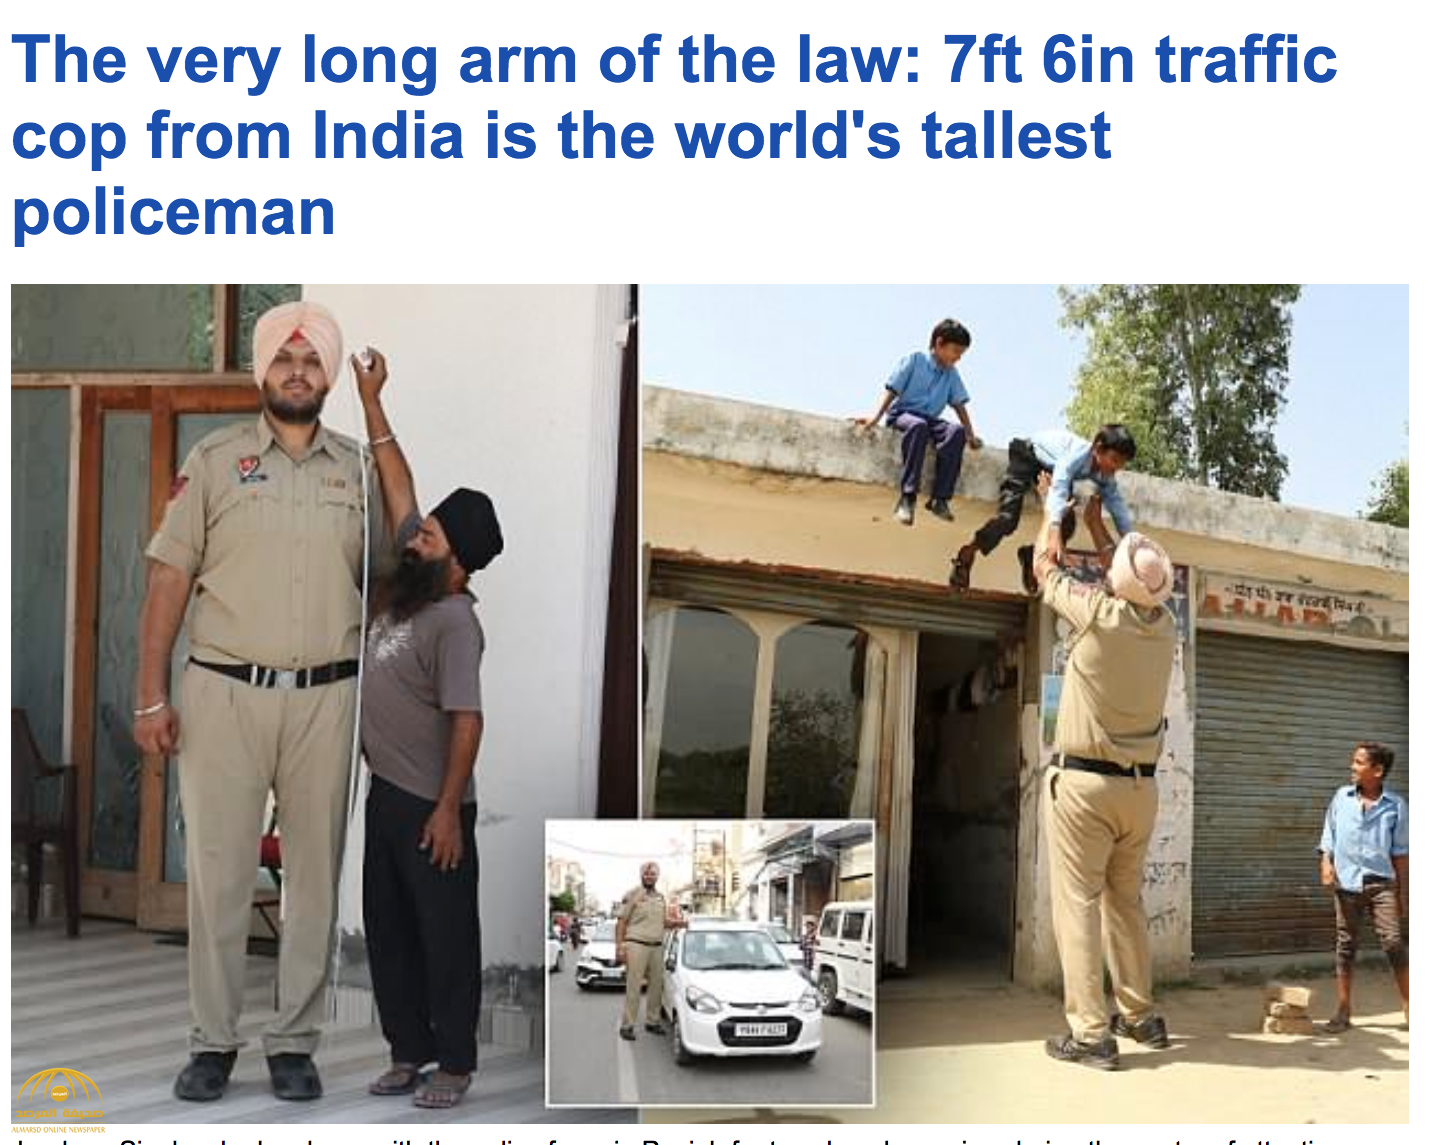 بالصور: شاهد.. "سينغ" أطول شرطي في الهند ينسف أسطورة مزعومة لمواطنه "كومار".. وهذا هو طوله ووزنه!